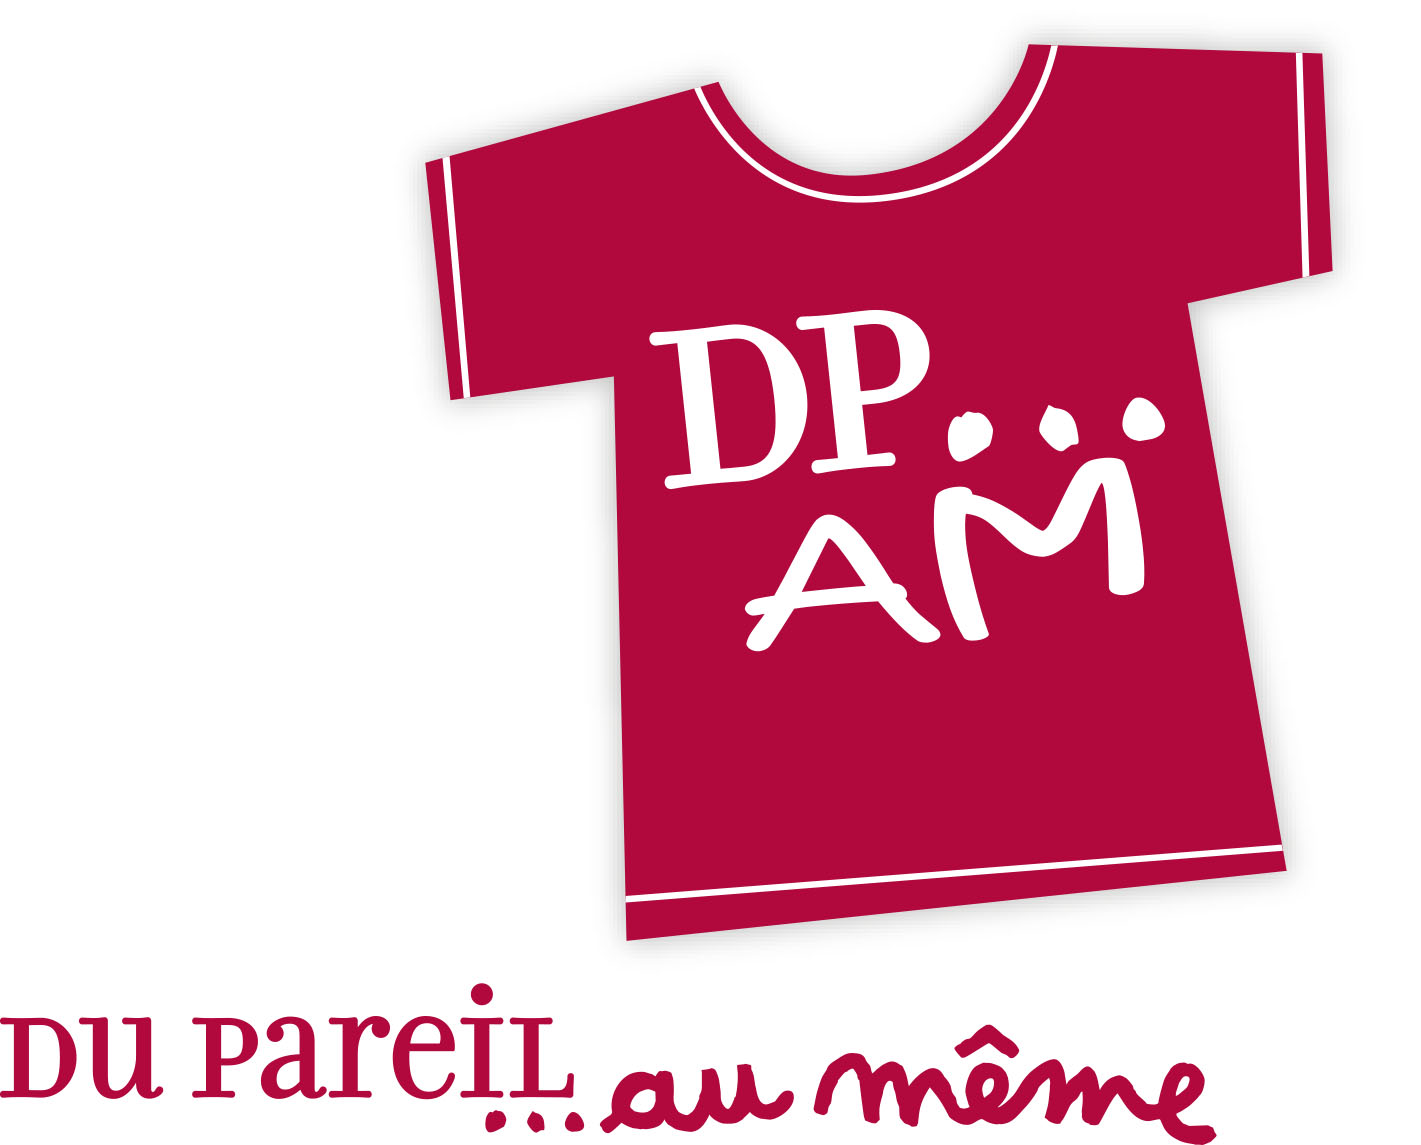 Du pareil au meme. DPAM лого. Du pareil детская одежда. DPAM детская одежда. Du pareil au meme детская одежда.